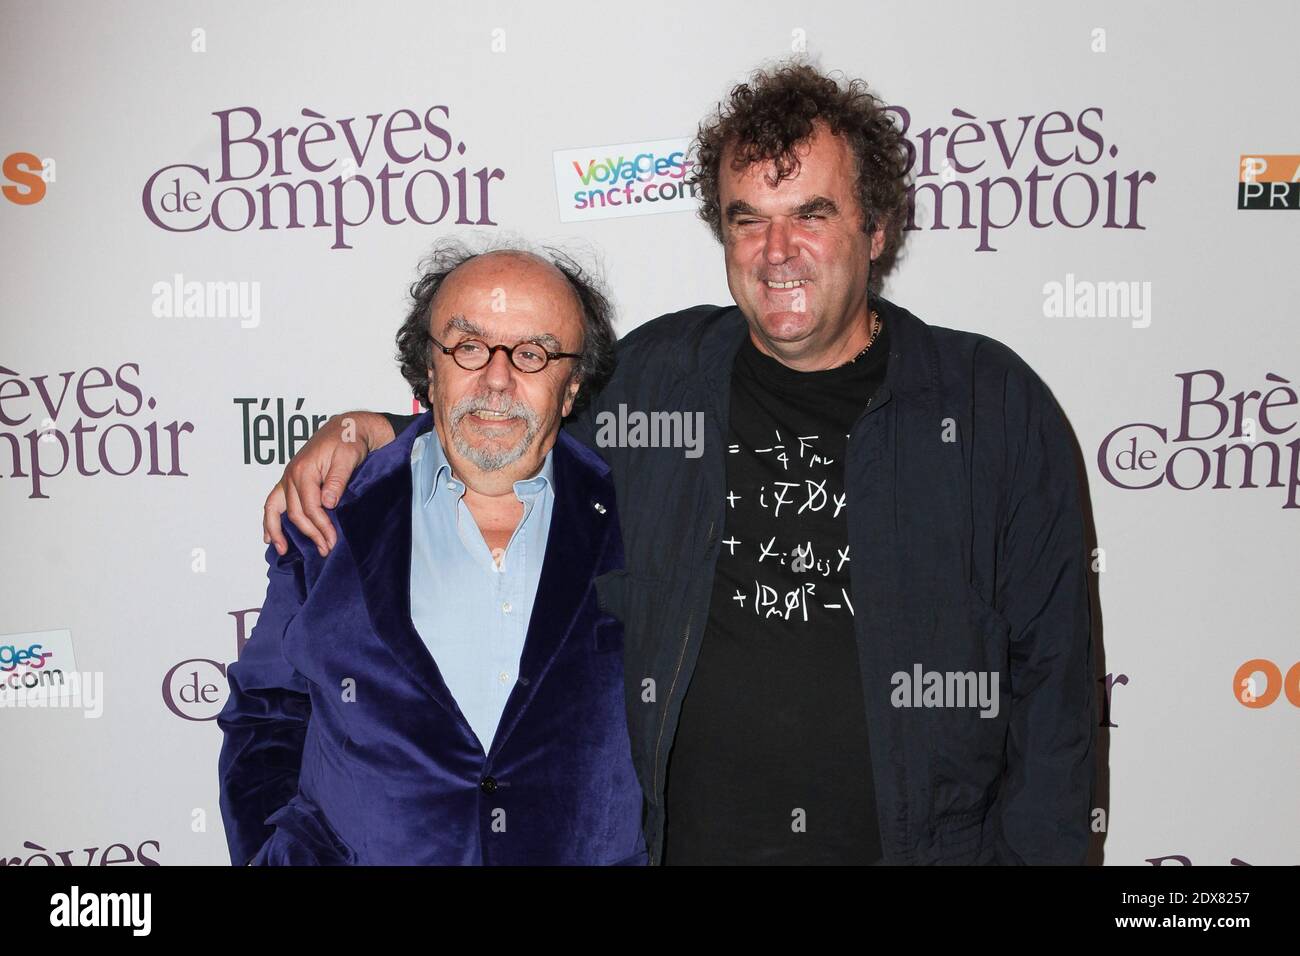 Jean-Michel Ribes e Pippo Delbono alla prima francese del film Breves de comptoir che si è tenuto al Theatre du Rond Point di Parigi, in Francia, l'8 settembre 2014. Foto di Audrey Poree/ABACAPRESS.COM Foto Stock